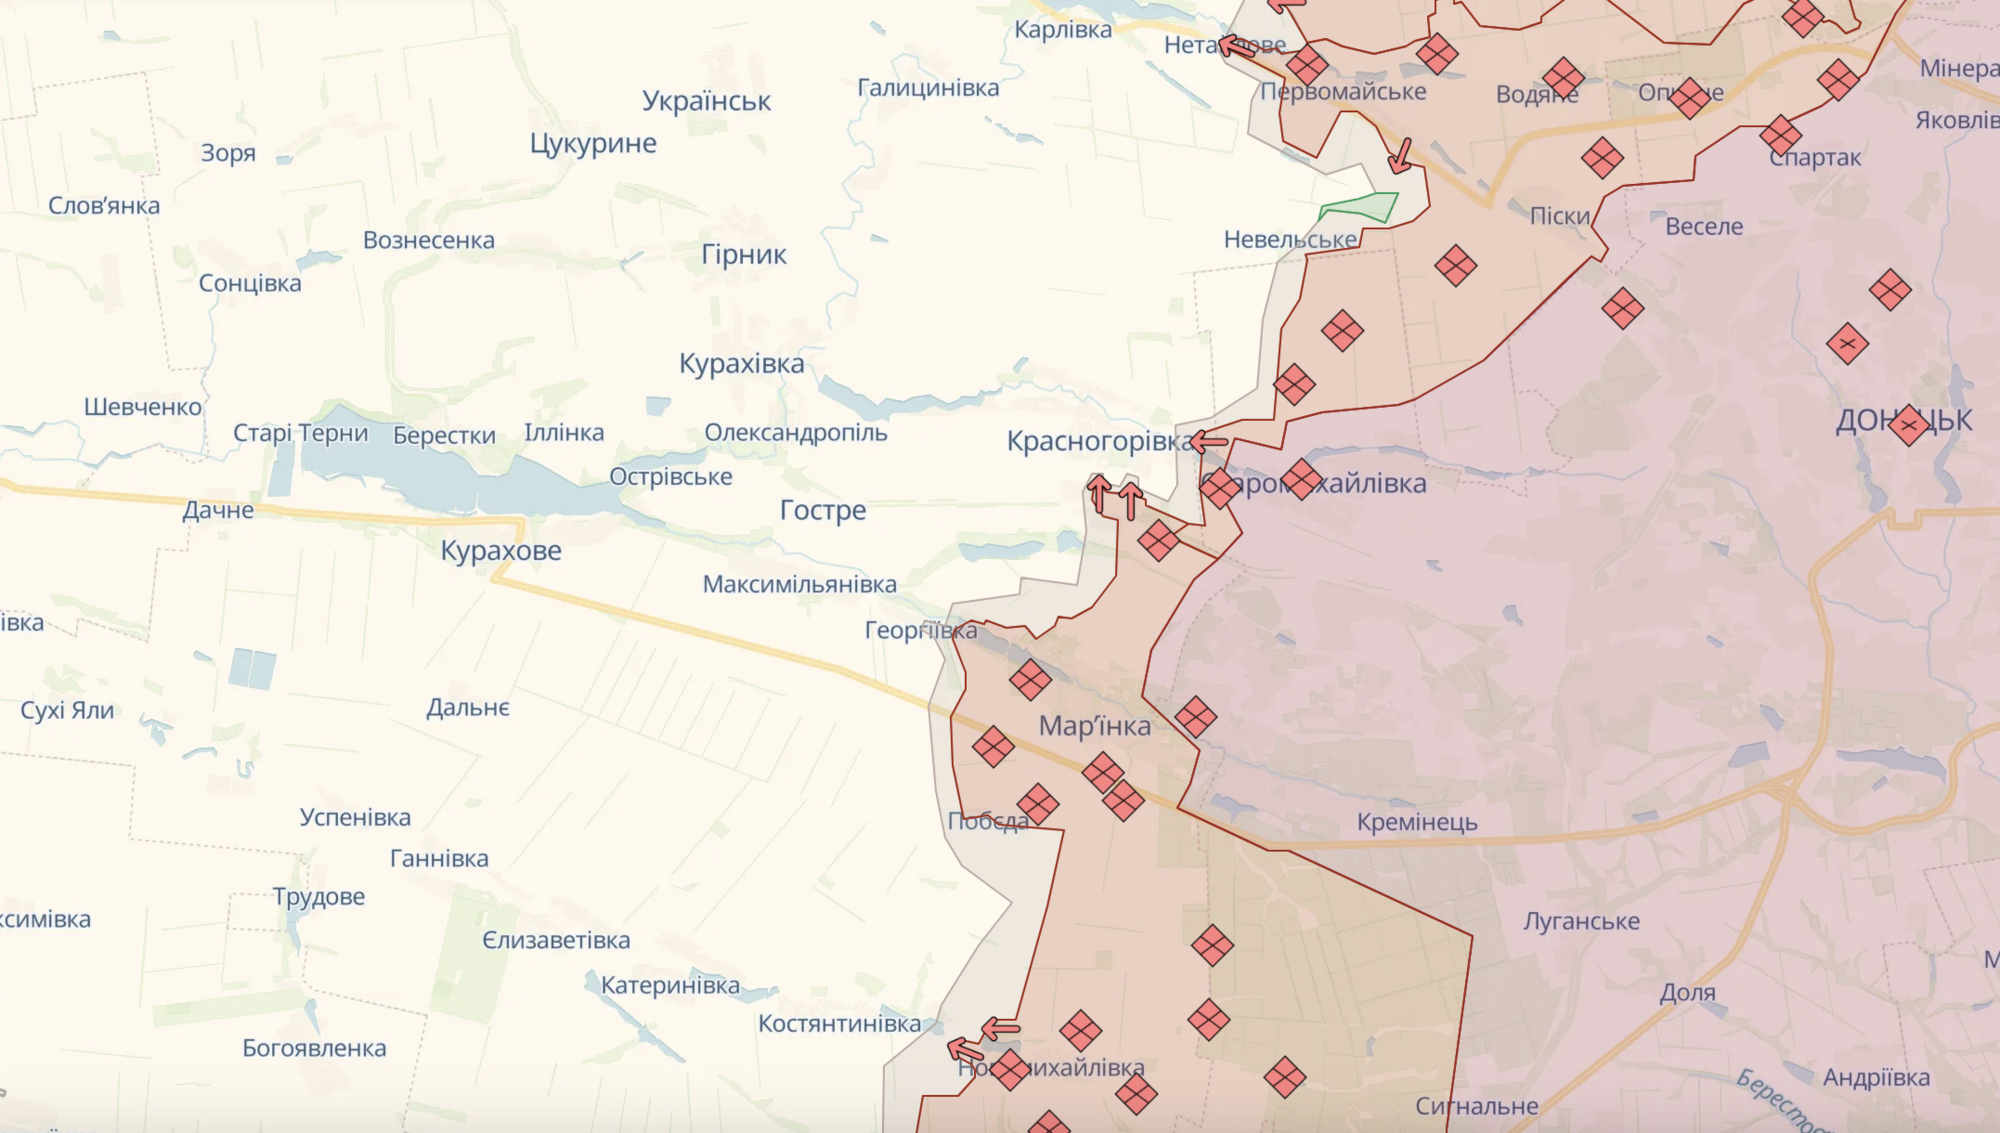 ''Trwają zaciekłe walki'': ukraińskie siły zbrojne informują o sytuacji w sektorach Pokrowskim i Kurachowskim